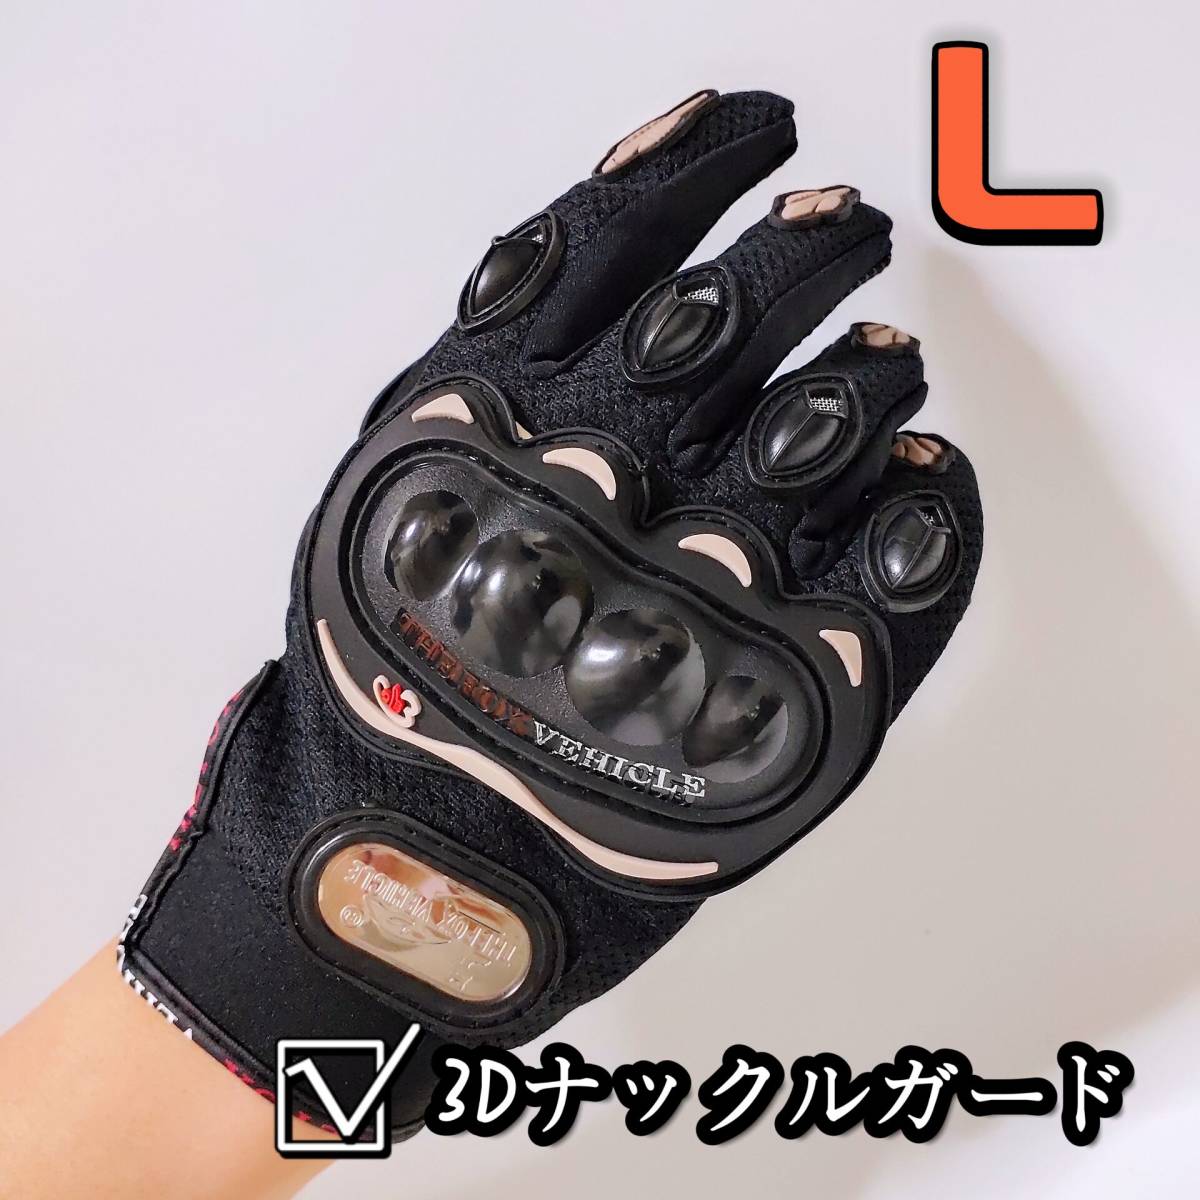 【新品黒L】バイクグローブ 手袋 ナックルガード ツーリング 滑り止め 春 夏 サイクリング 硬質プロテクションの画像1